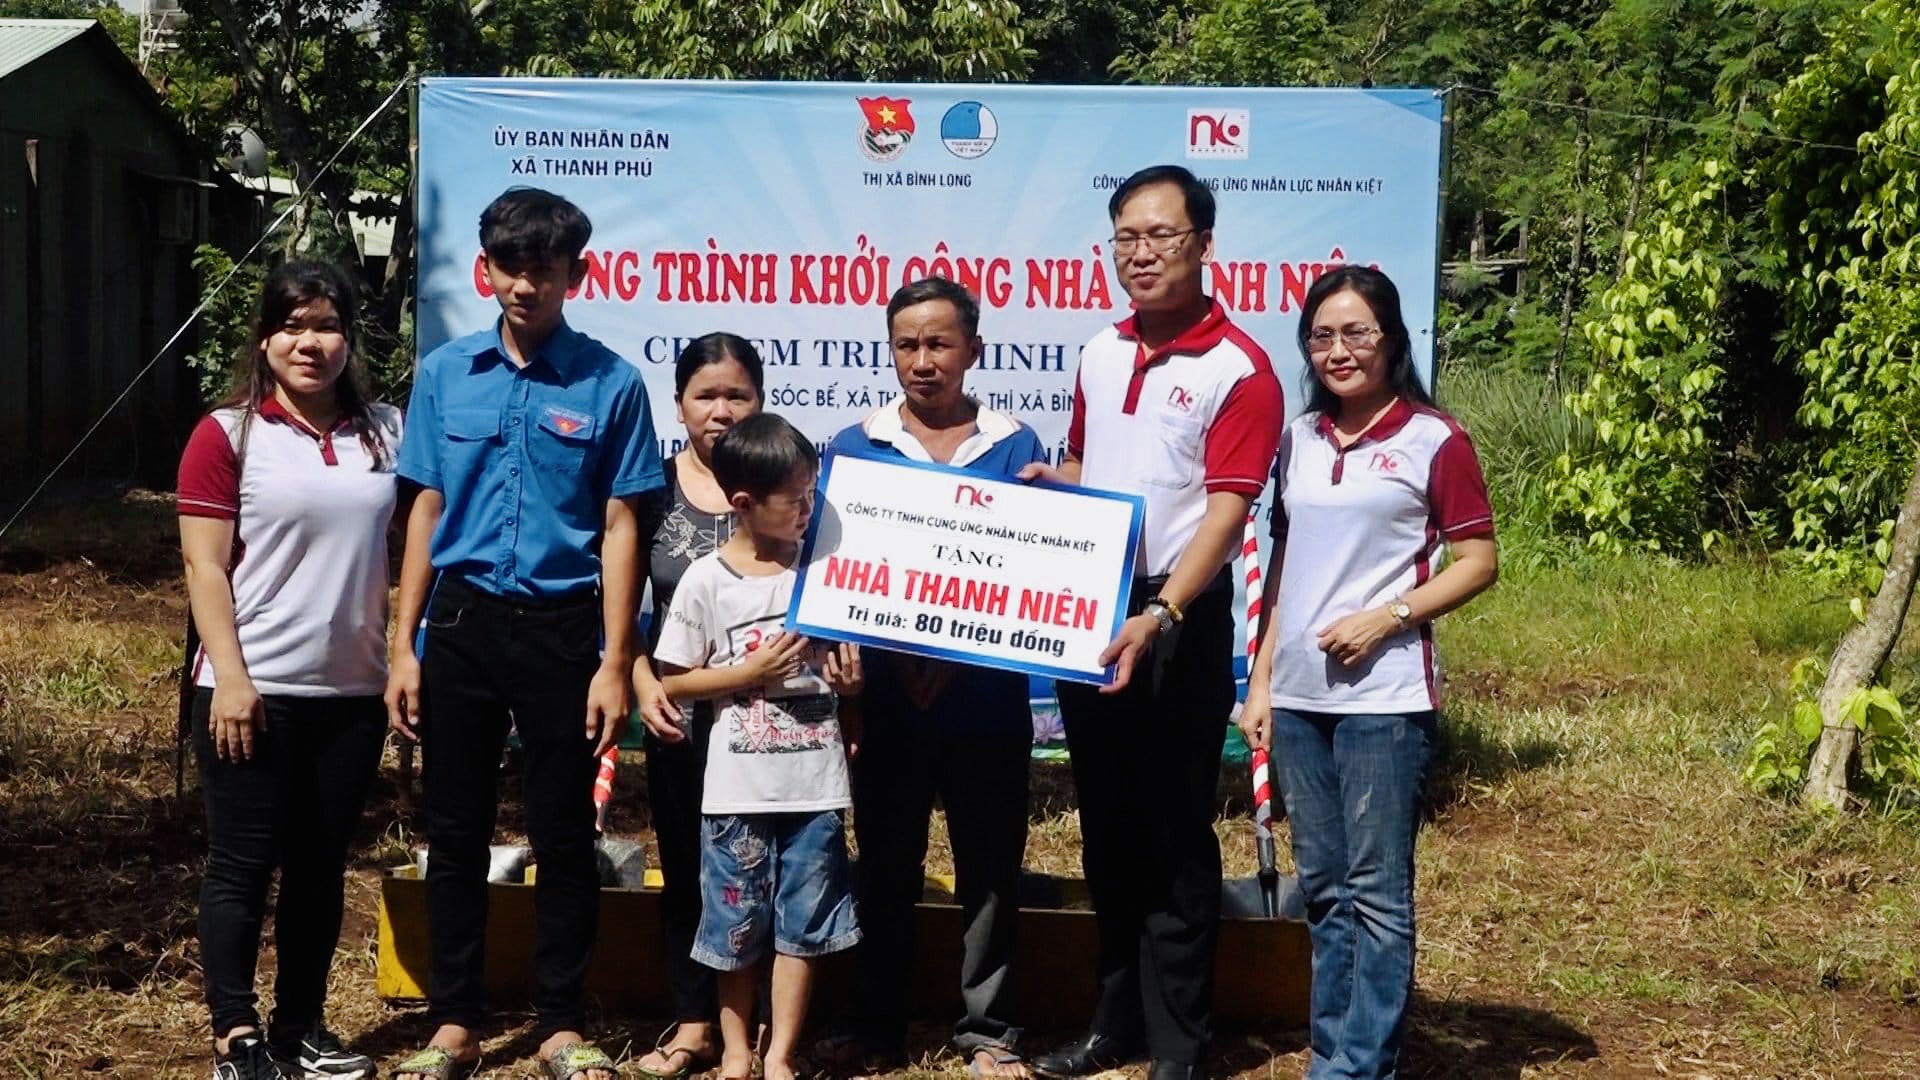 Nhân Kiệt Khởi công xây dựng nhà Thanh niên cho gia đình em Trịnh Minh Triết